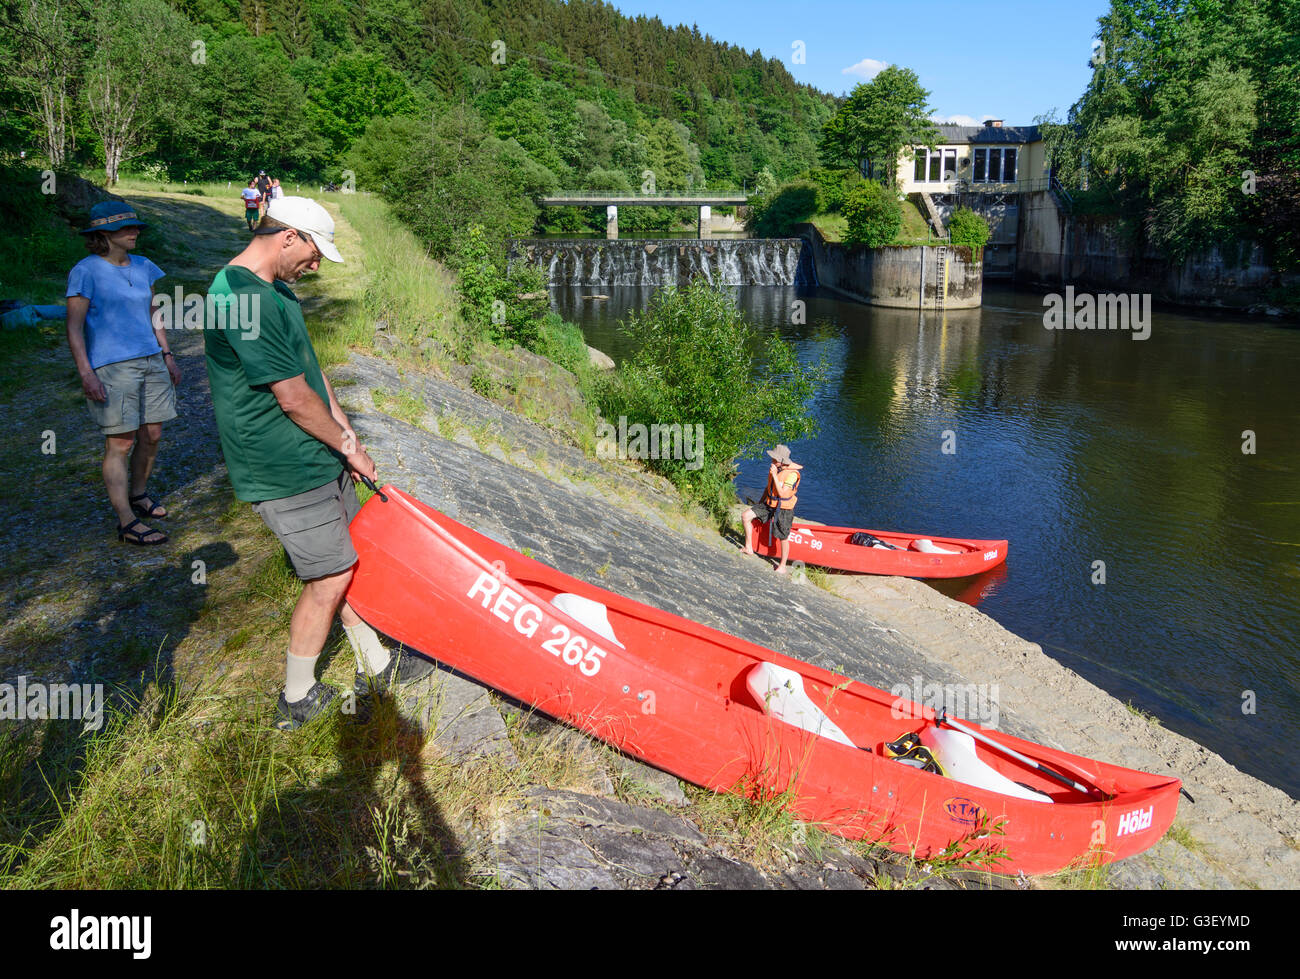 Portage pagayeur un canoë canadien ( ) à l'usine hydroélectrique sur la rivière Gumpenried Schwarzer Regen, Allemagne, Bayern, Bava Banque D'Images